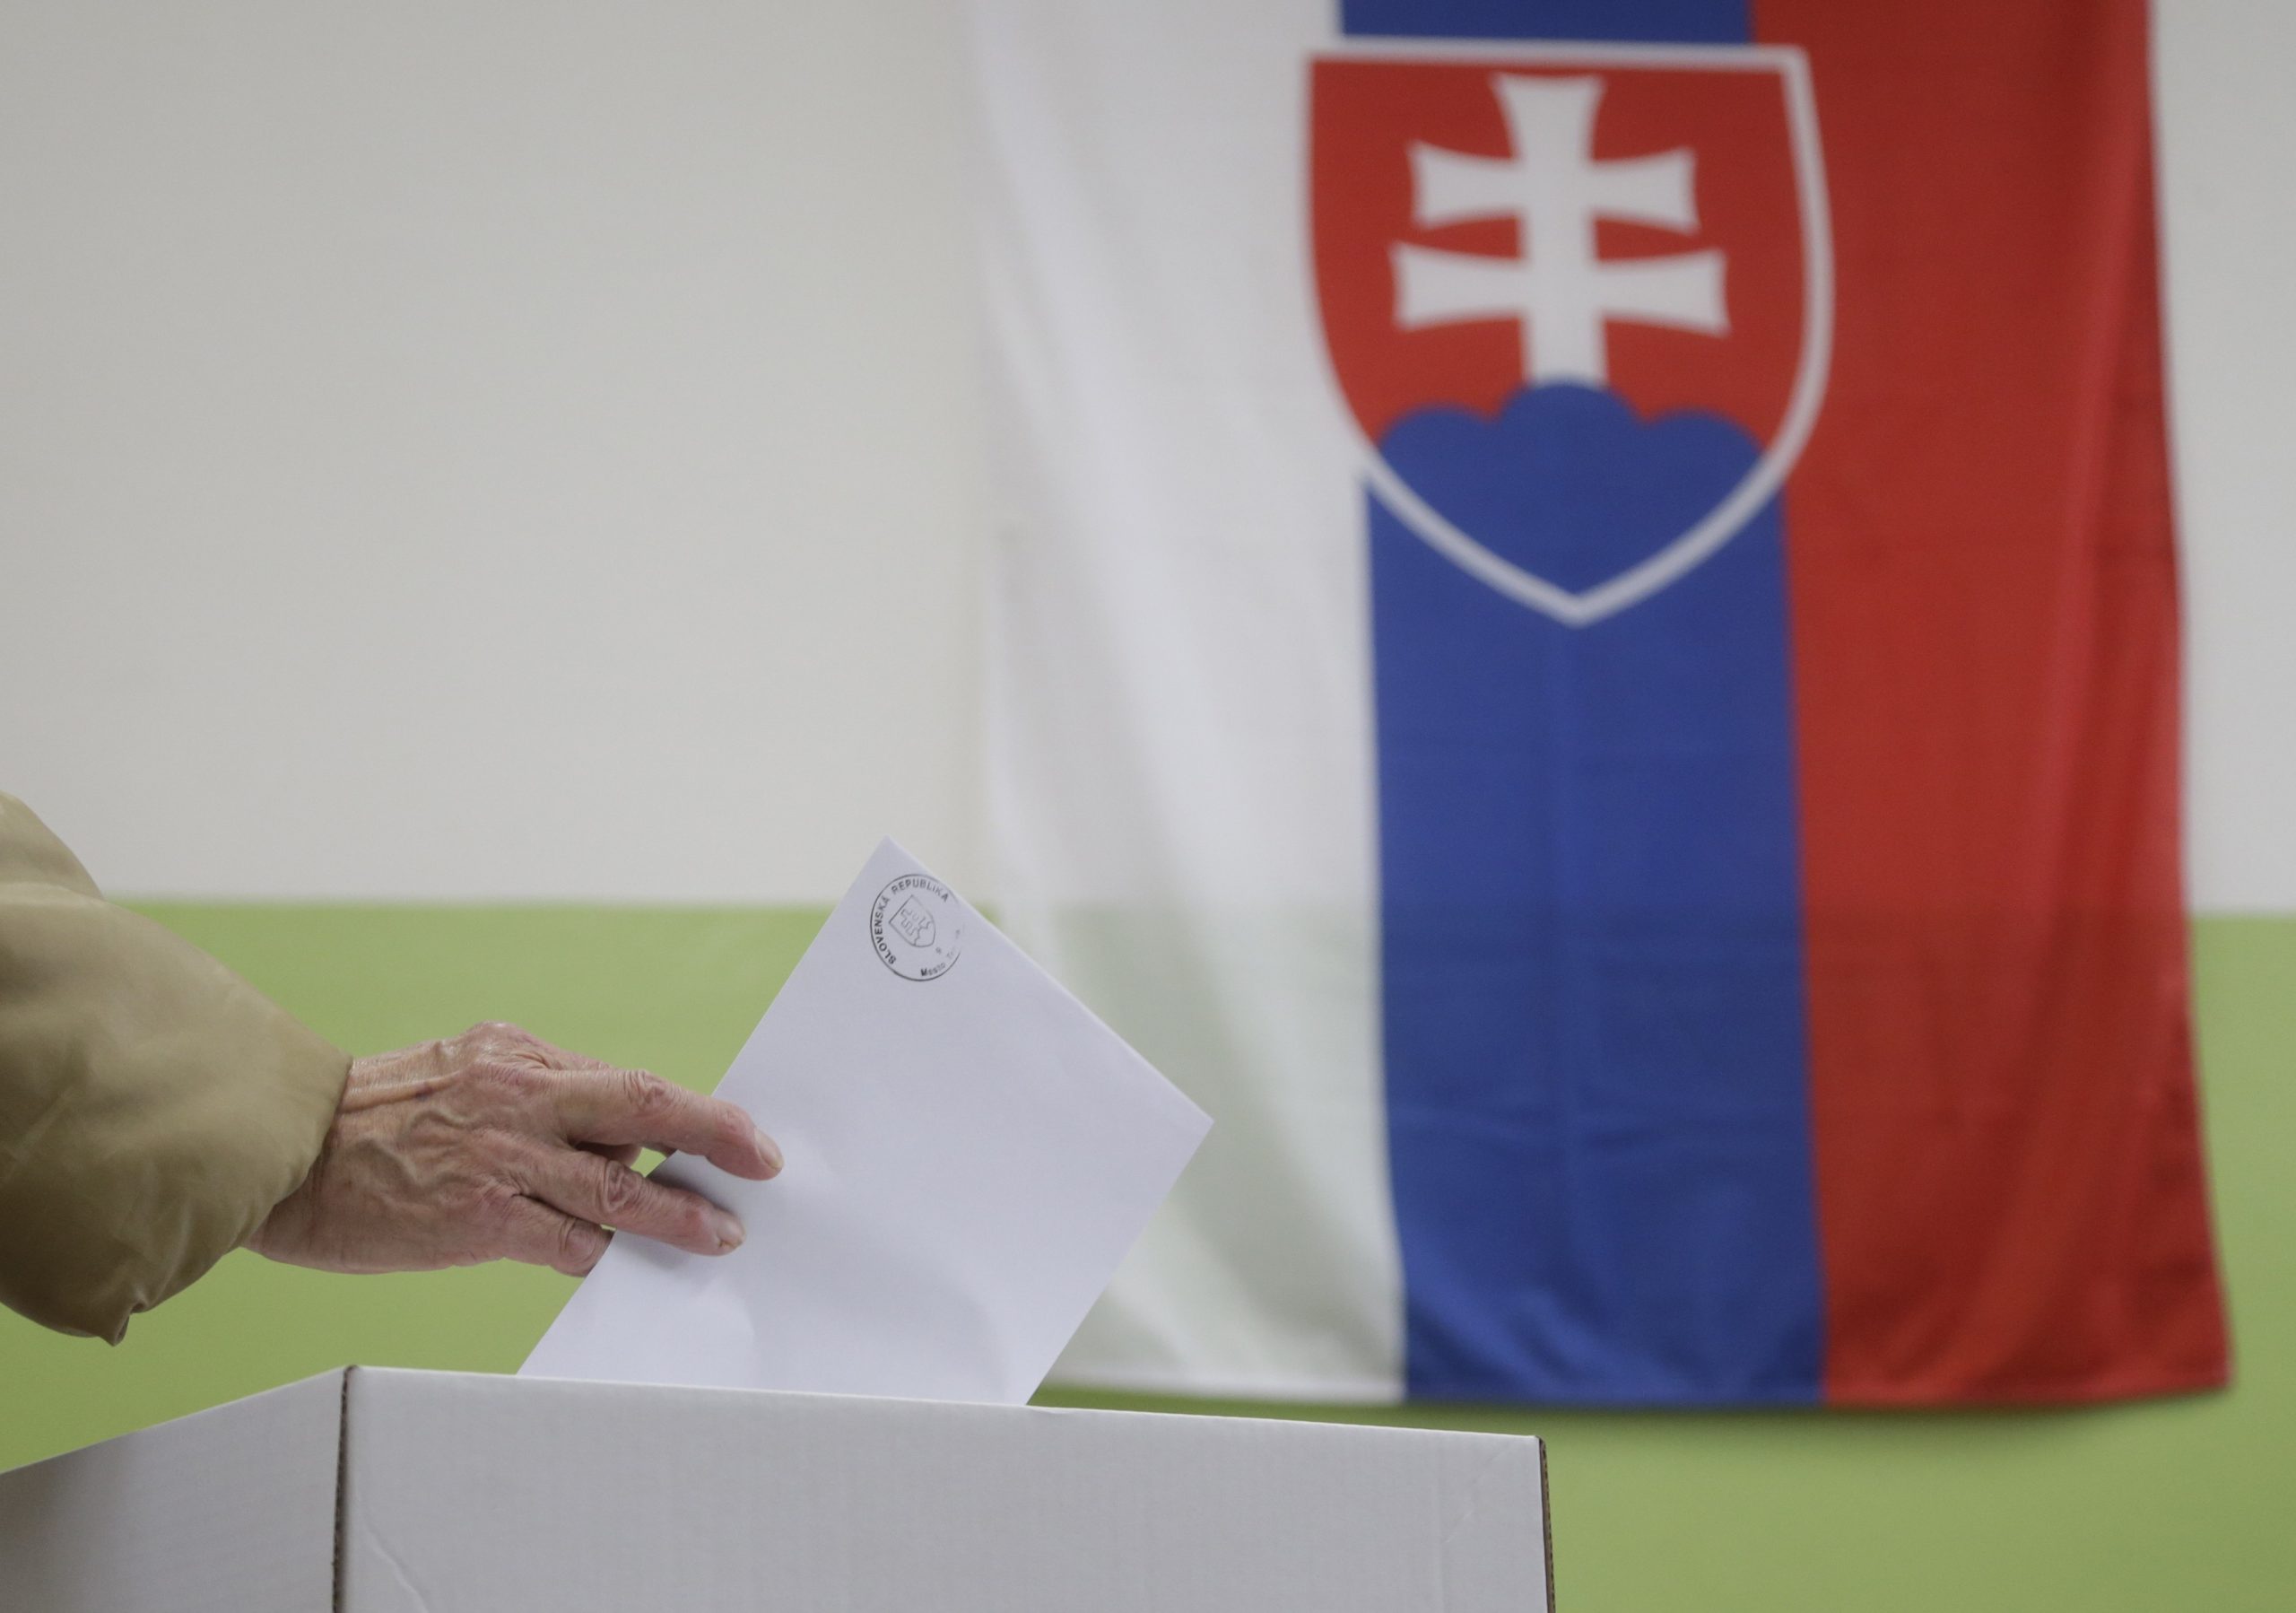 Προεδρικές εκλογές στη Σλοβακία: Μια 45χρονη δικηγόρος φαίνεται να είναι η πρώτη επιλογή